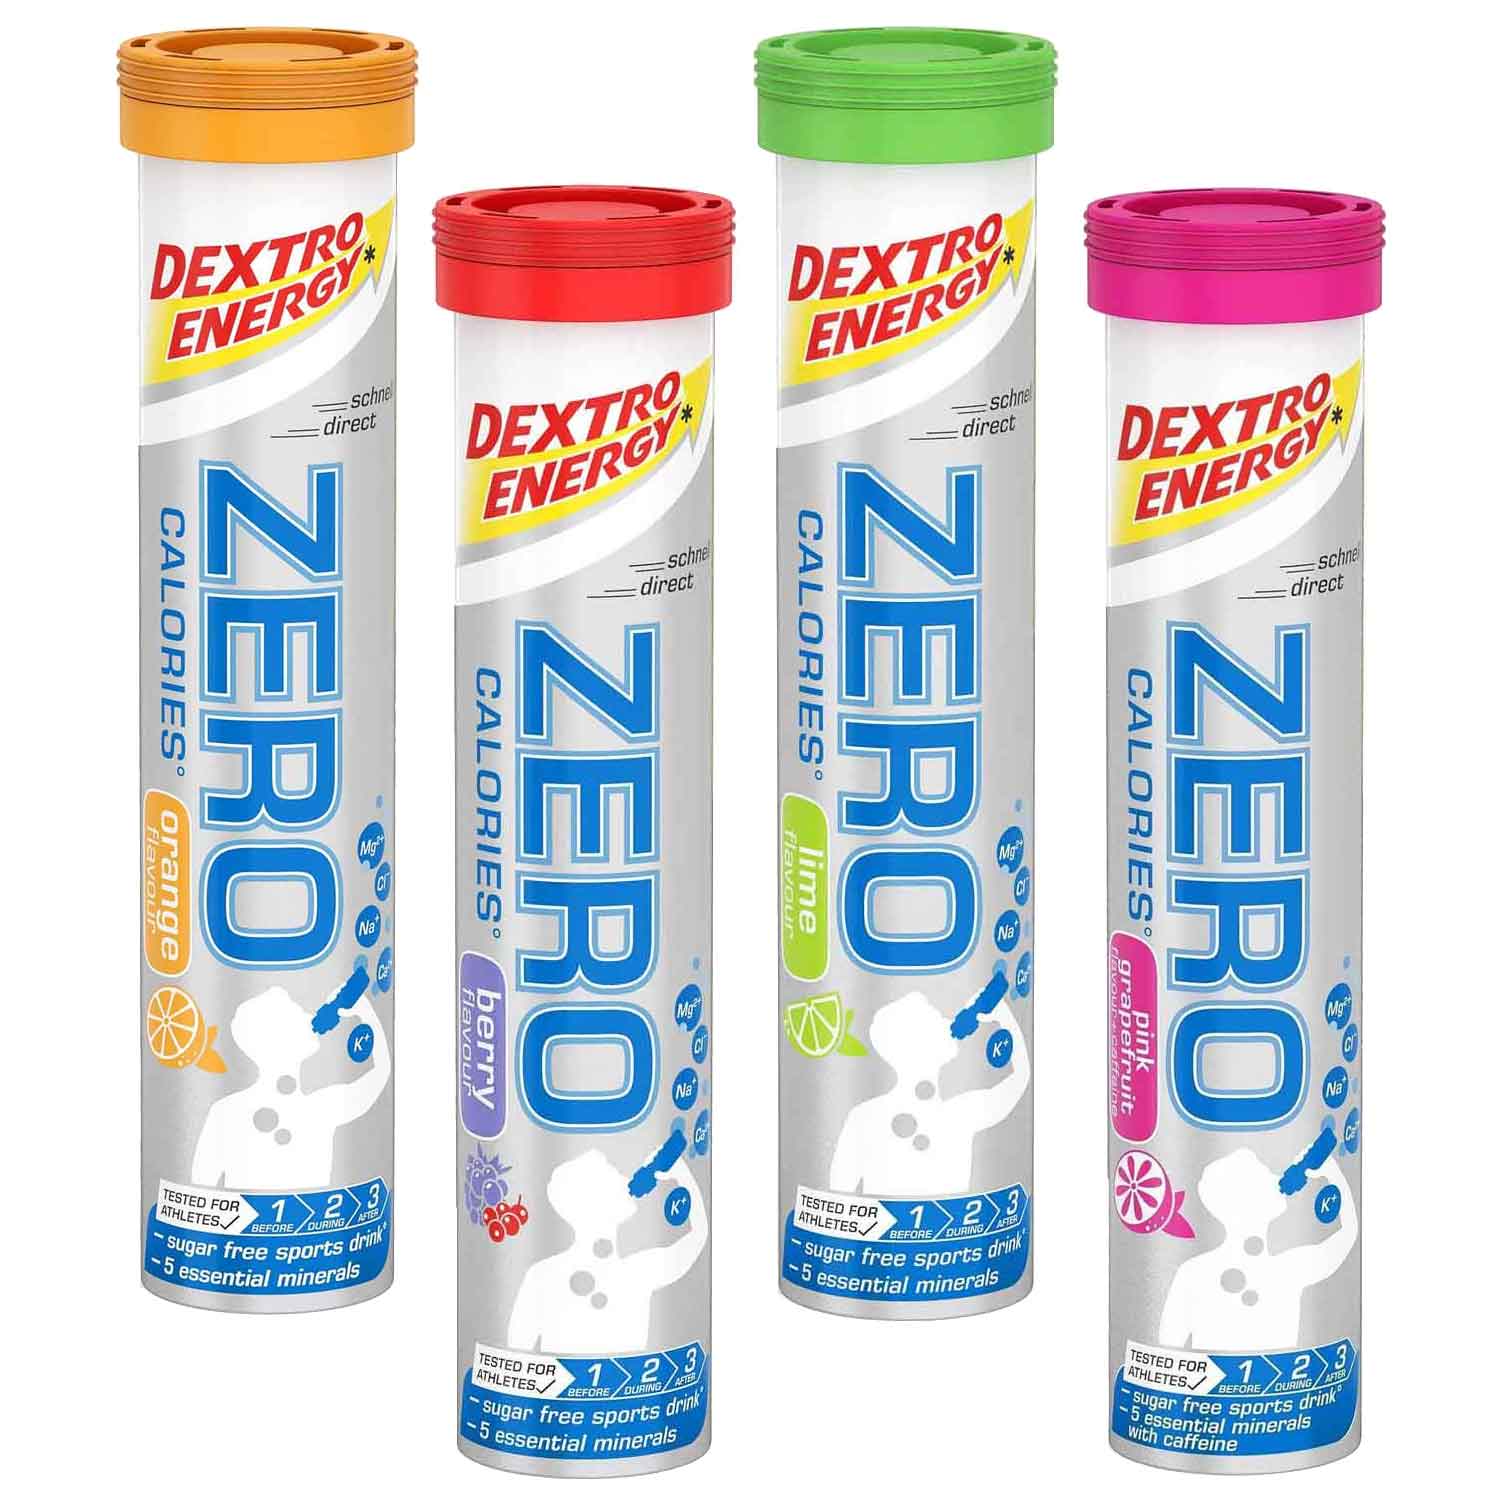 Bild von Dextro Energy Zero Calories - Brausetabletten - 20 Stk.